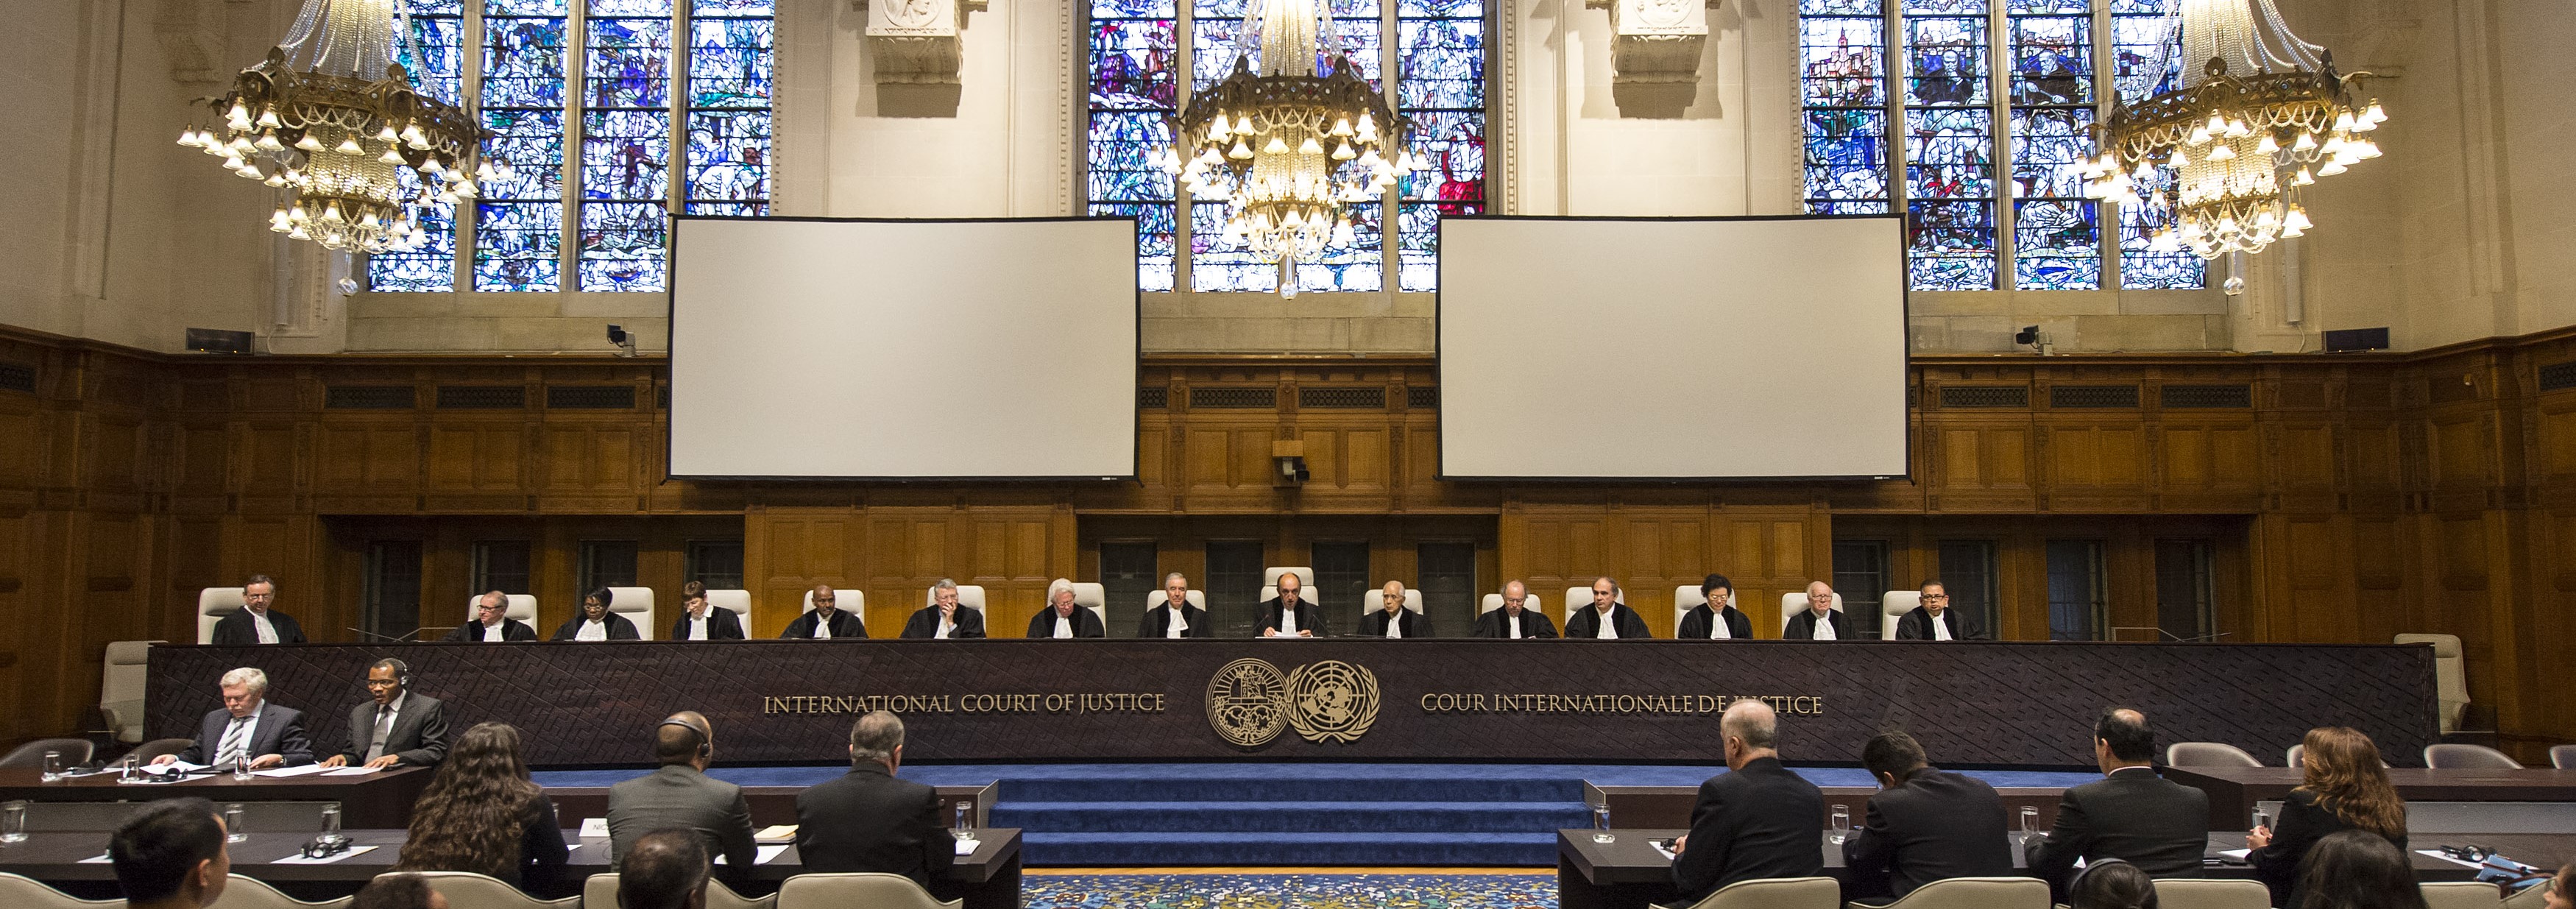 Дела суда оон. Международный суд в Гааге. Международный Уголовный трибунал (Гаага). Здание международного суда ООН В Гааге. Международный суд ООН камера что это.